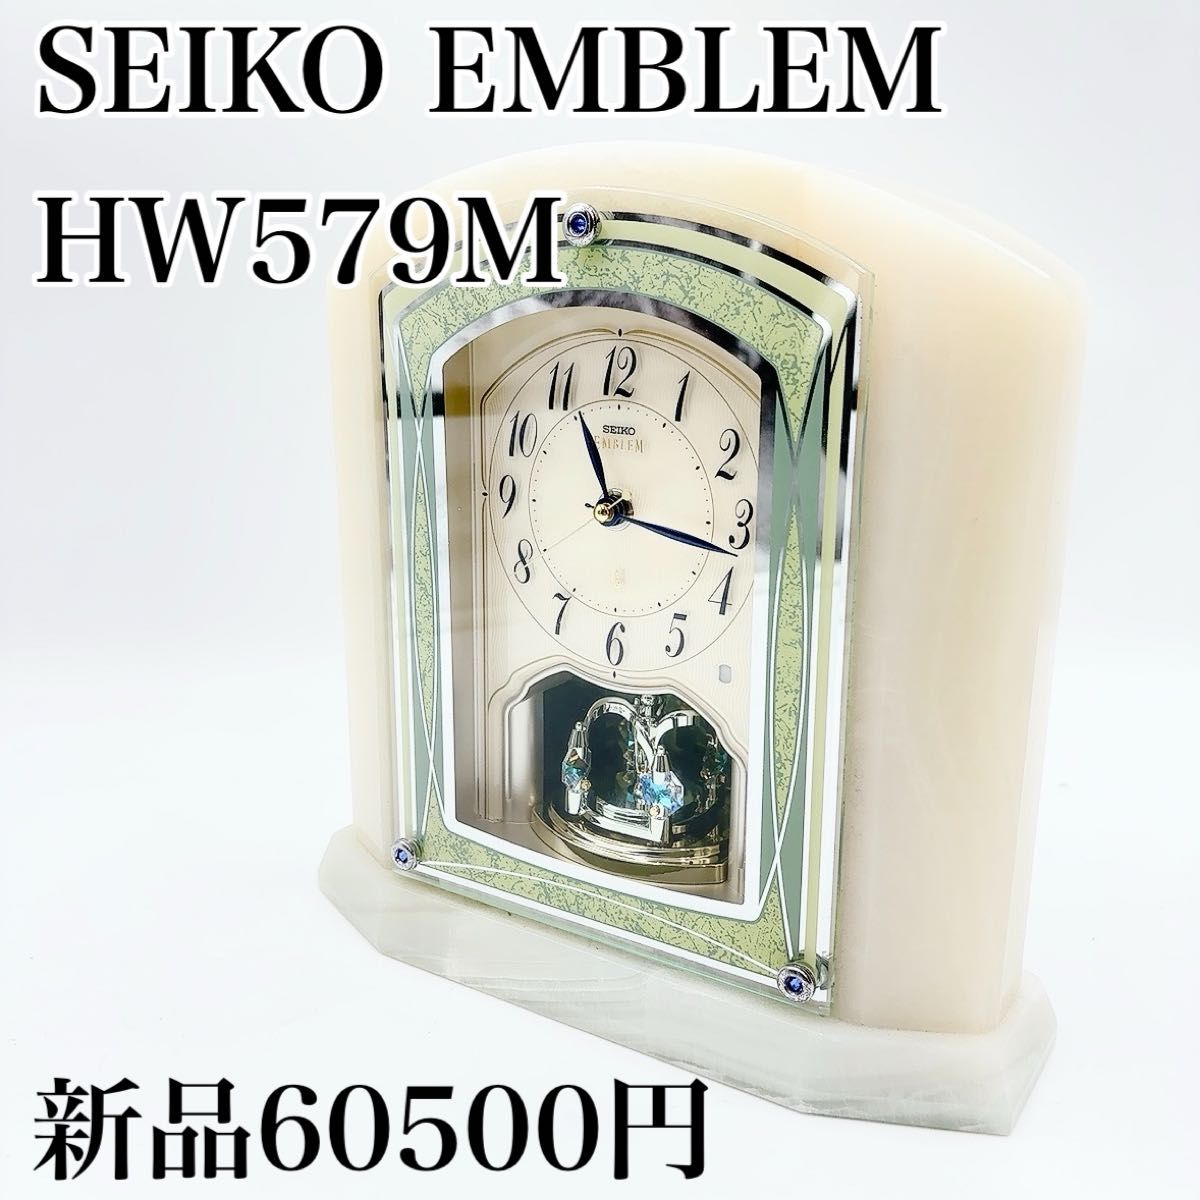 セイコー EMBLEM 置き時計 HW579M SEIKO オニキス枠